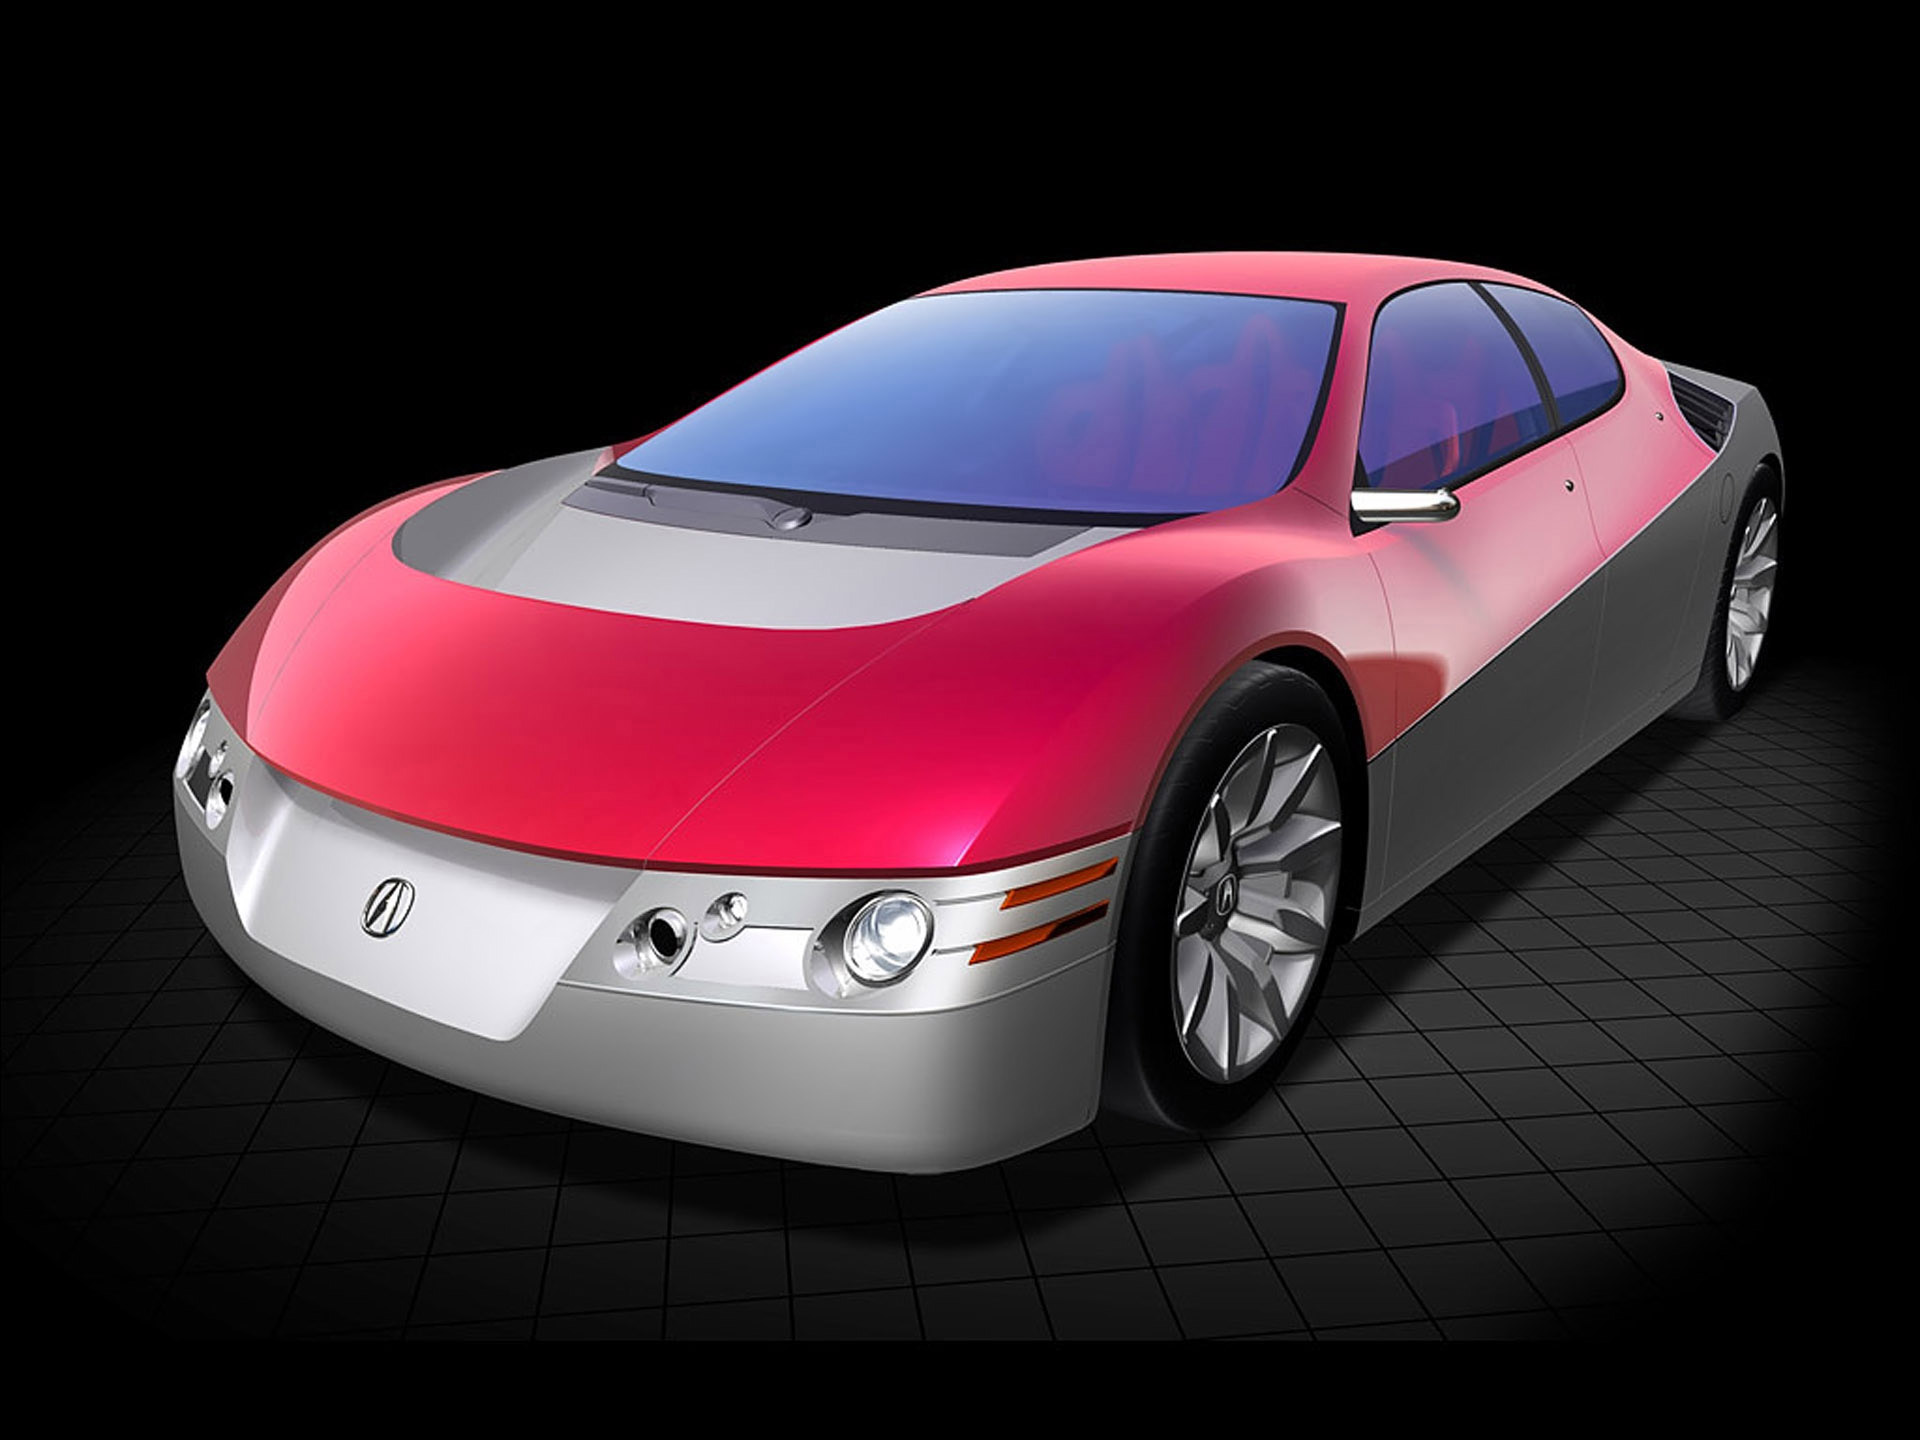 Acura DN-X Concept Sport Sedan